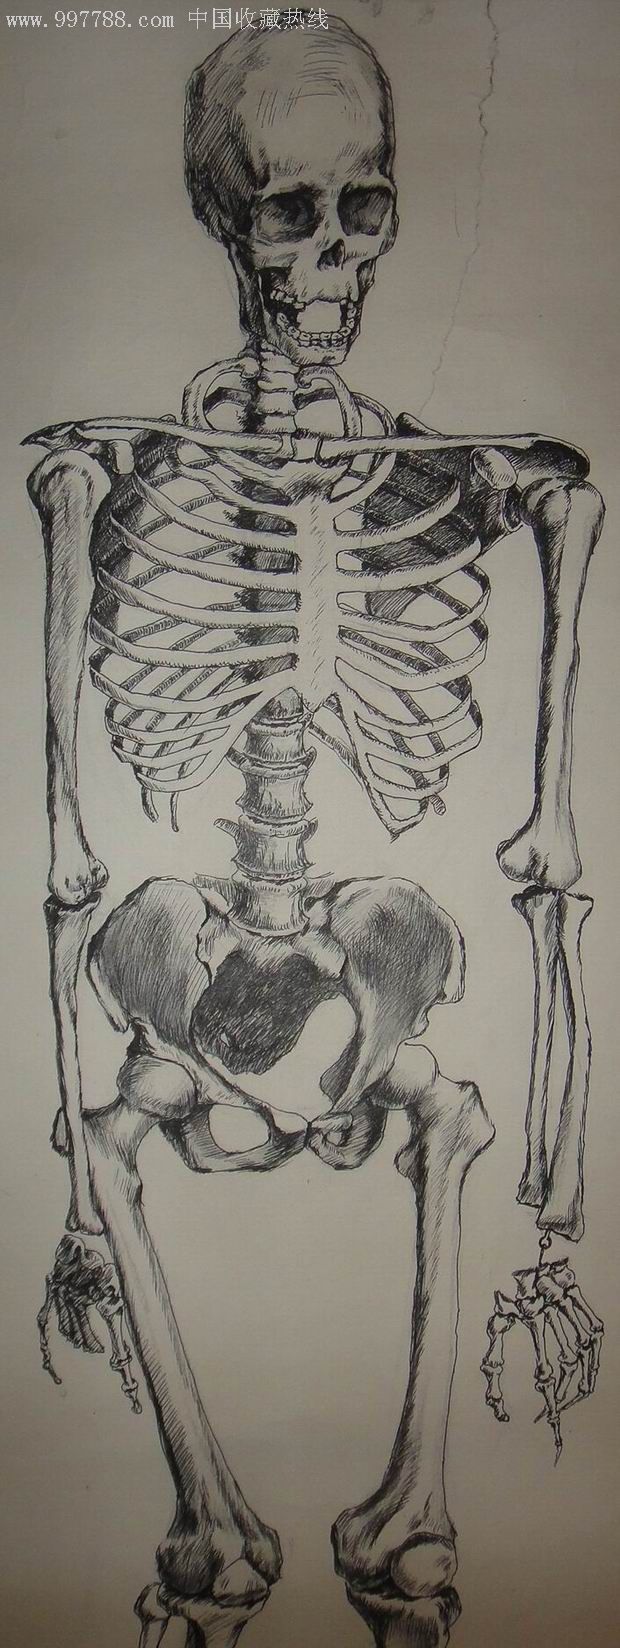 人体骨架模型图素描图片